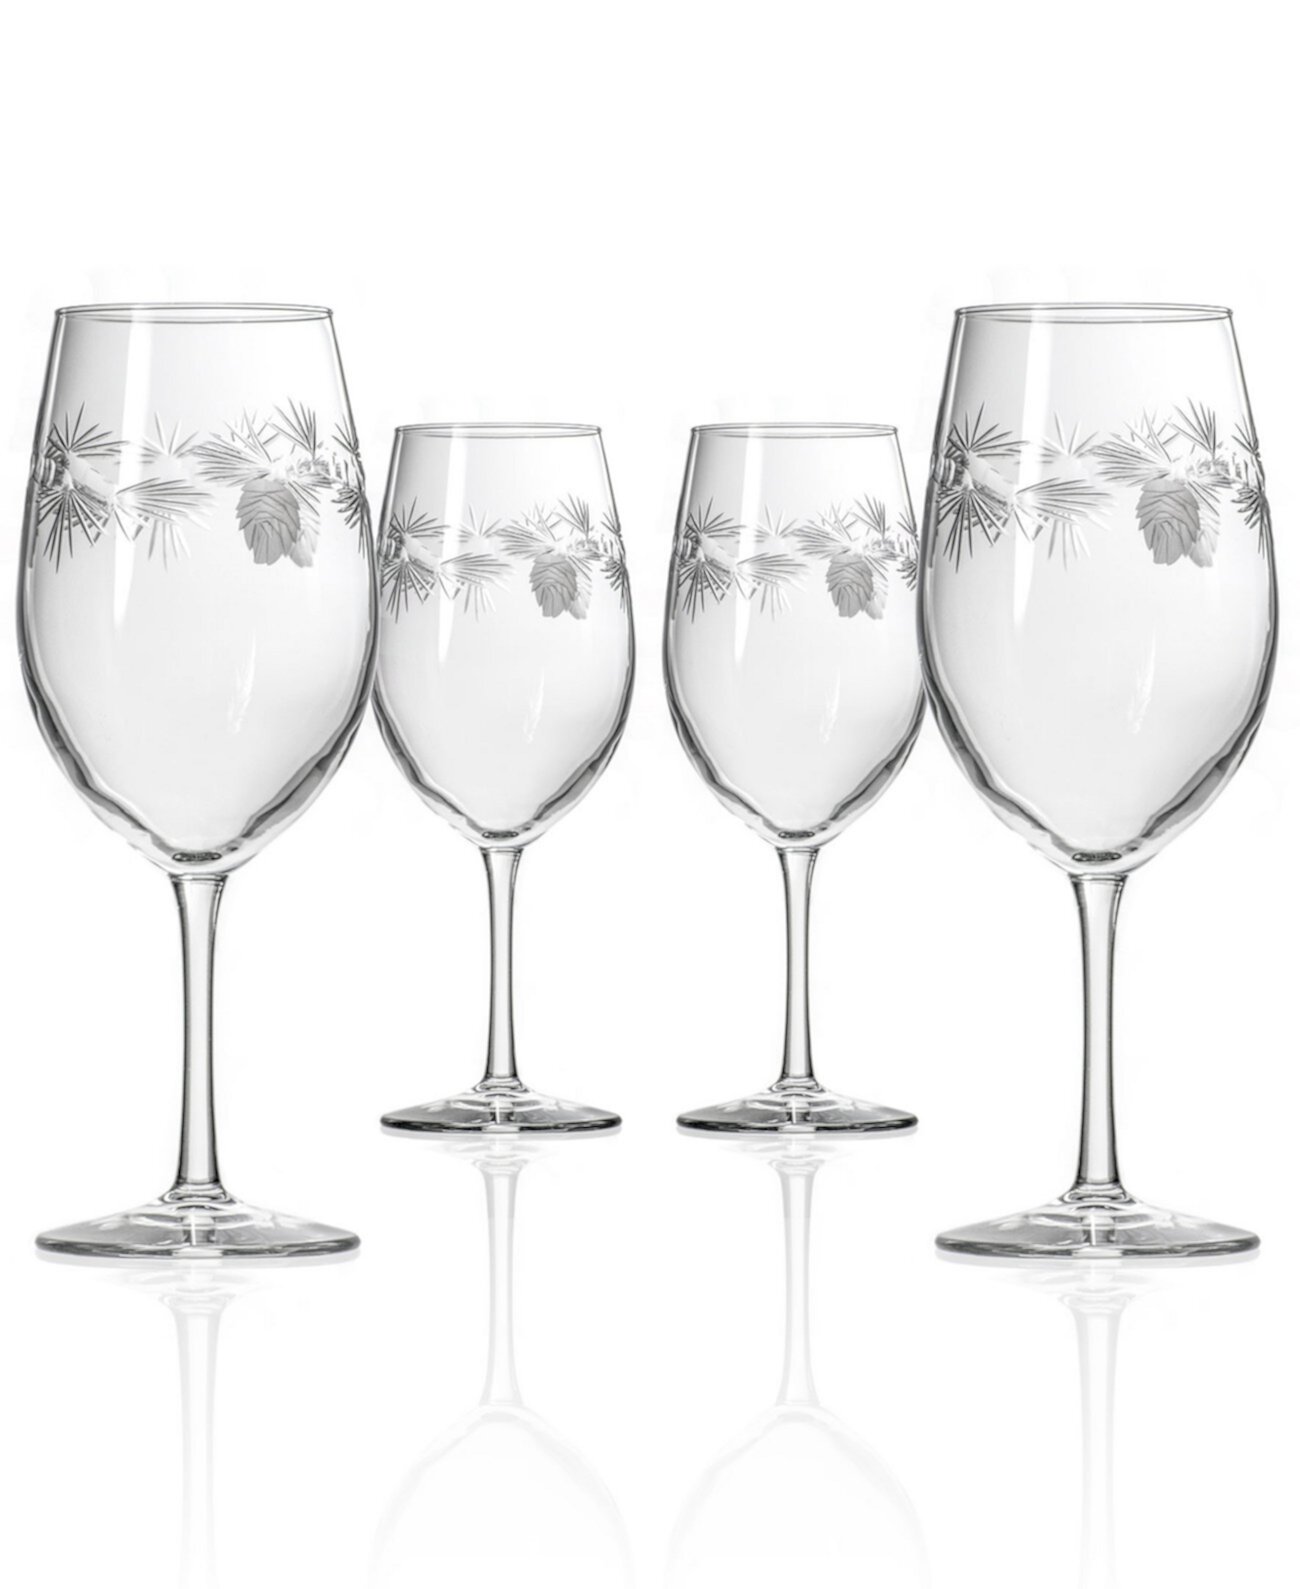 Универсальный бокал для вина Icy Pine 18 унций - набор из 4 бокалов Rolf Glass